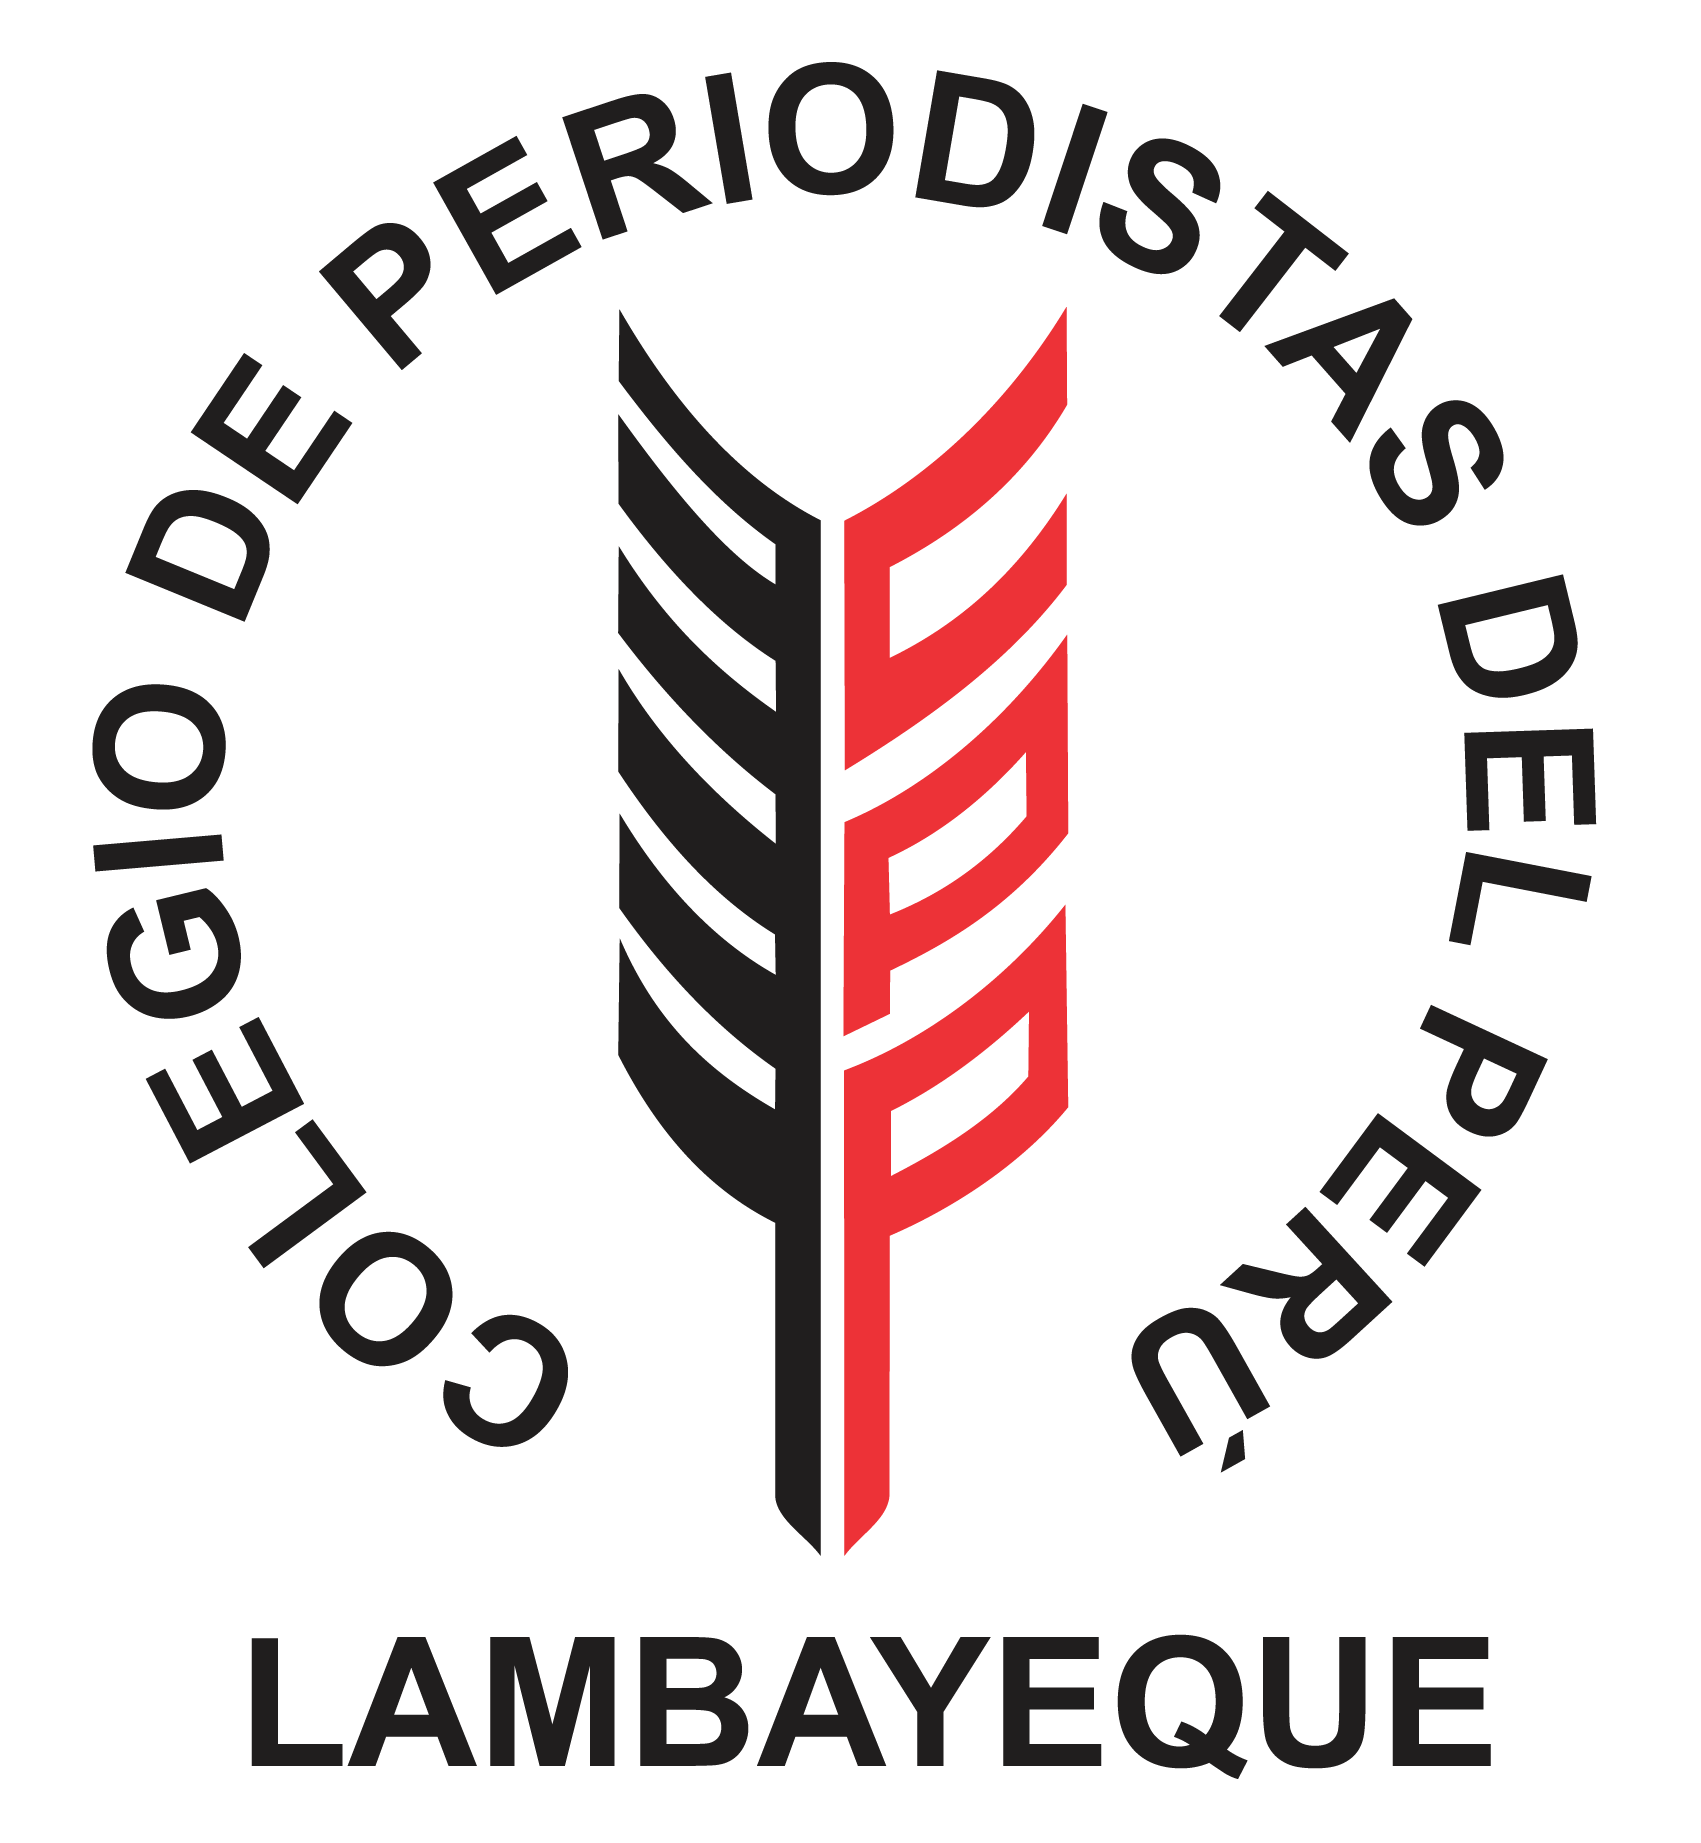 Colegio de Periodistas de Lambayeque